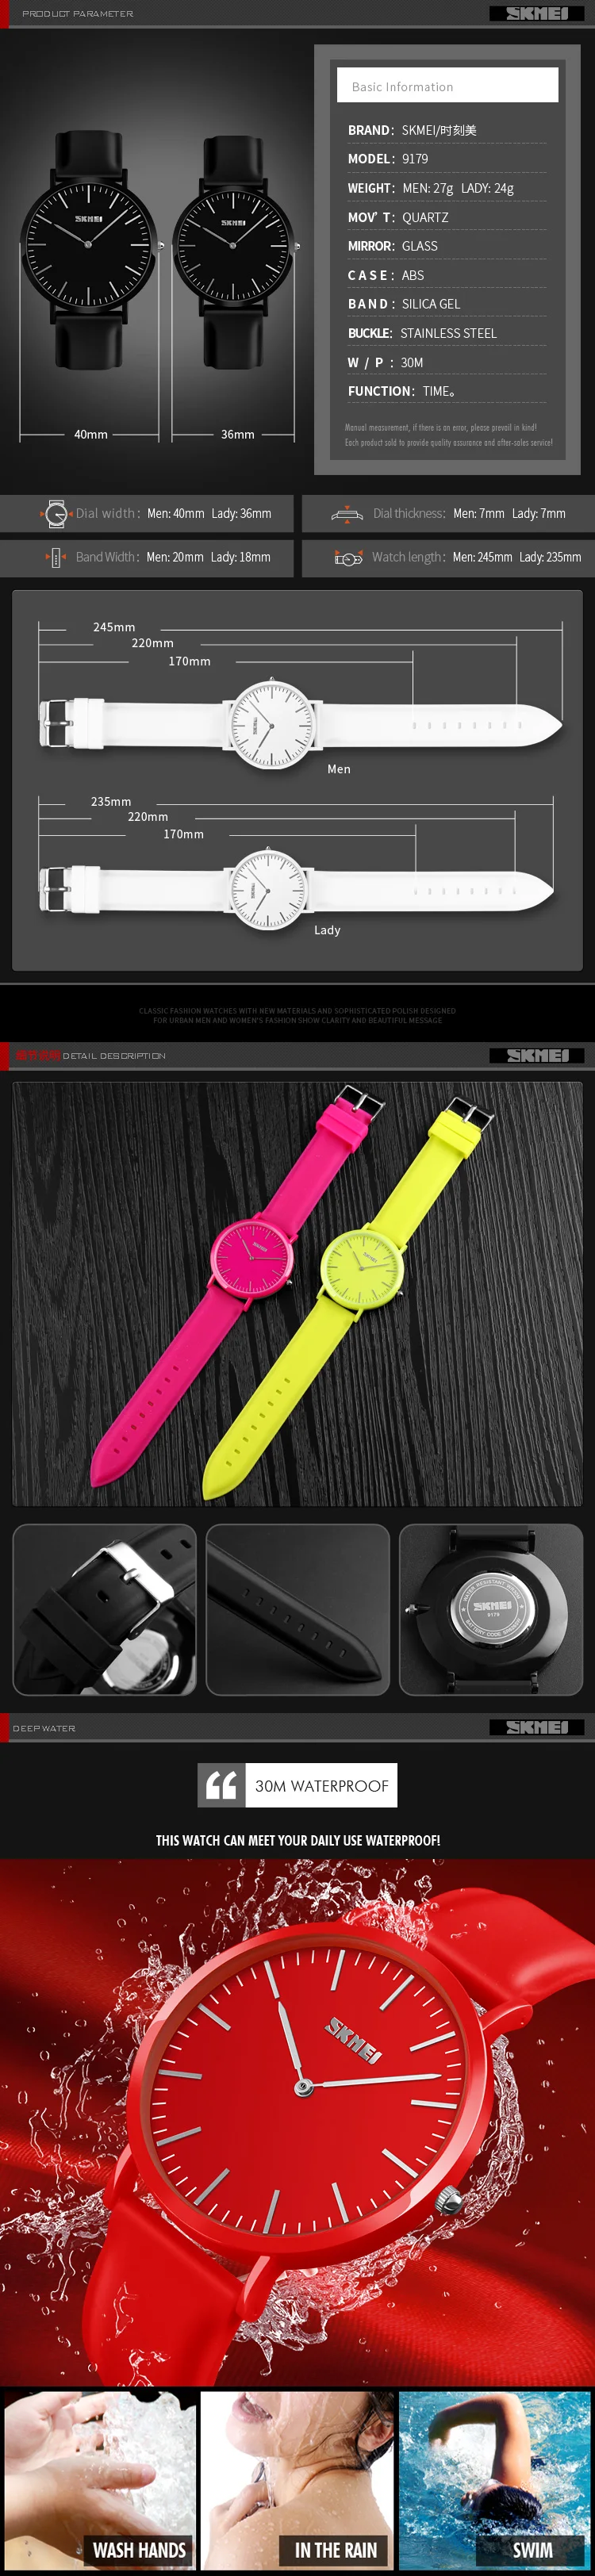 SKMEI простые кварцевые наручные часы для женщин и мужчин водонепроницаемые оранжевые цифровые часы женская одежда многоцветные женские часы с силиконовым ремешком